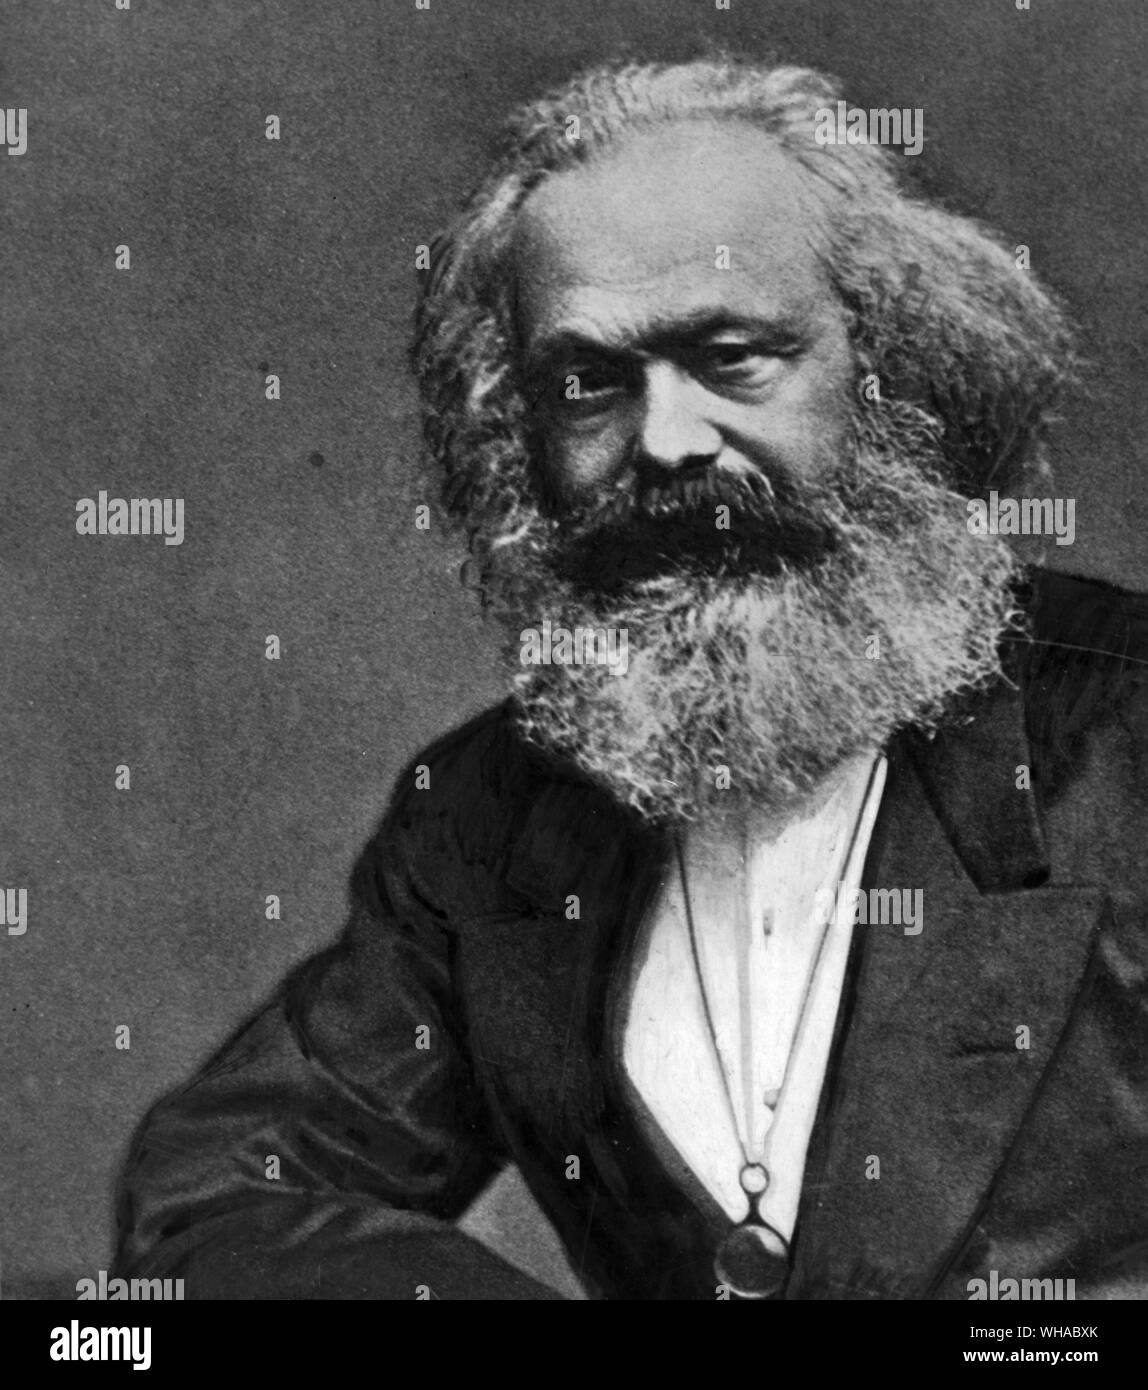 Karl Marx 1818-1883 ses écrits ont inspiré les théories du communisme. À son avis, la religion n'a servi qu'à détourner les travailleurs de leur lutte pour le pouvoir, c'était l'opium du peuple Banque D'Images